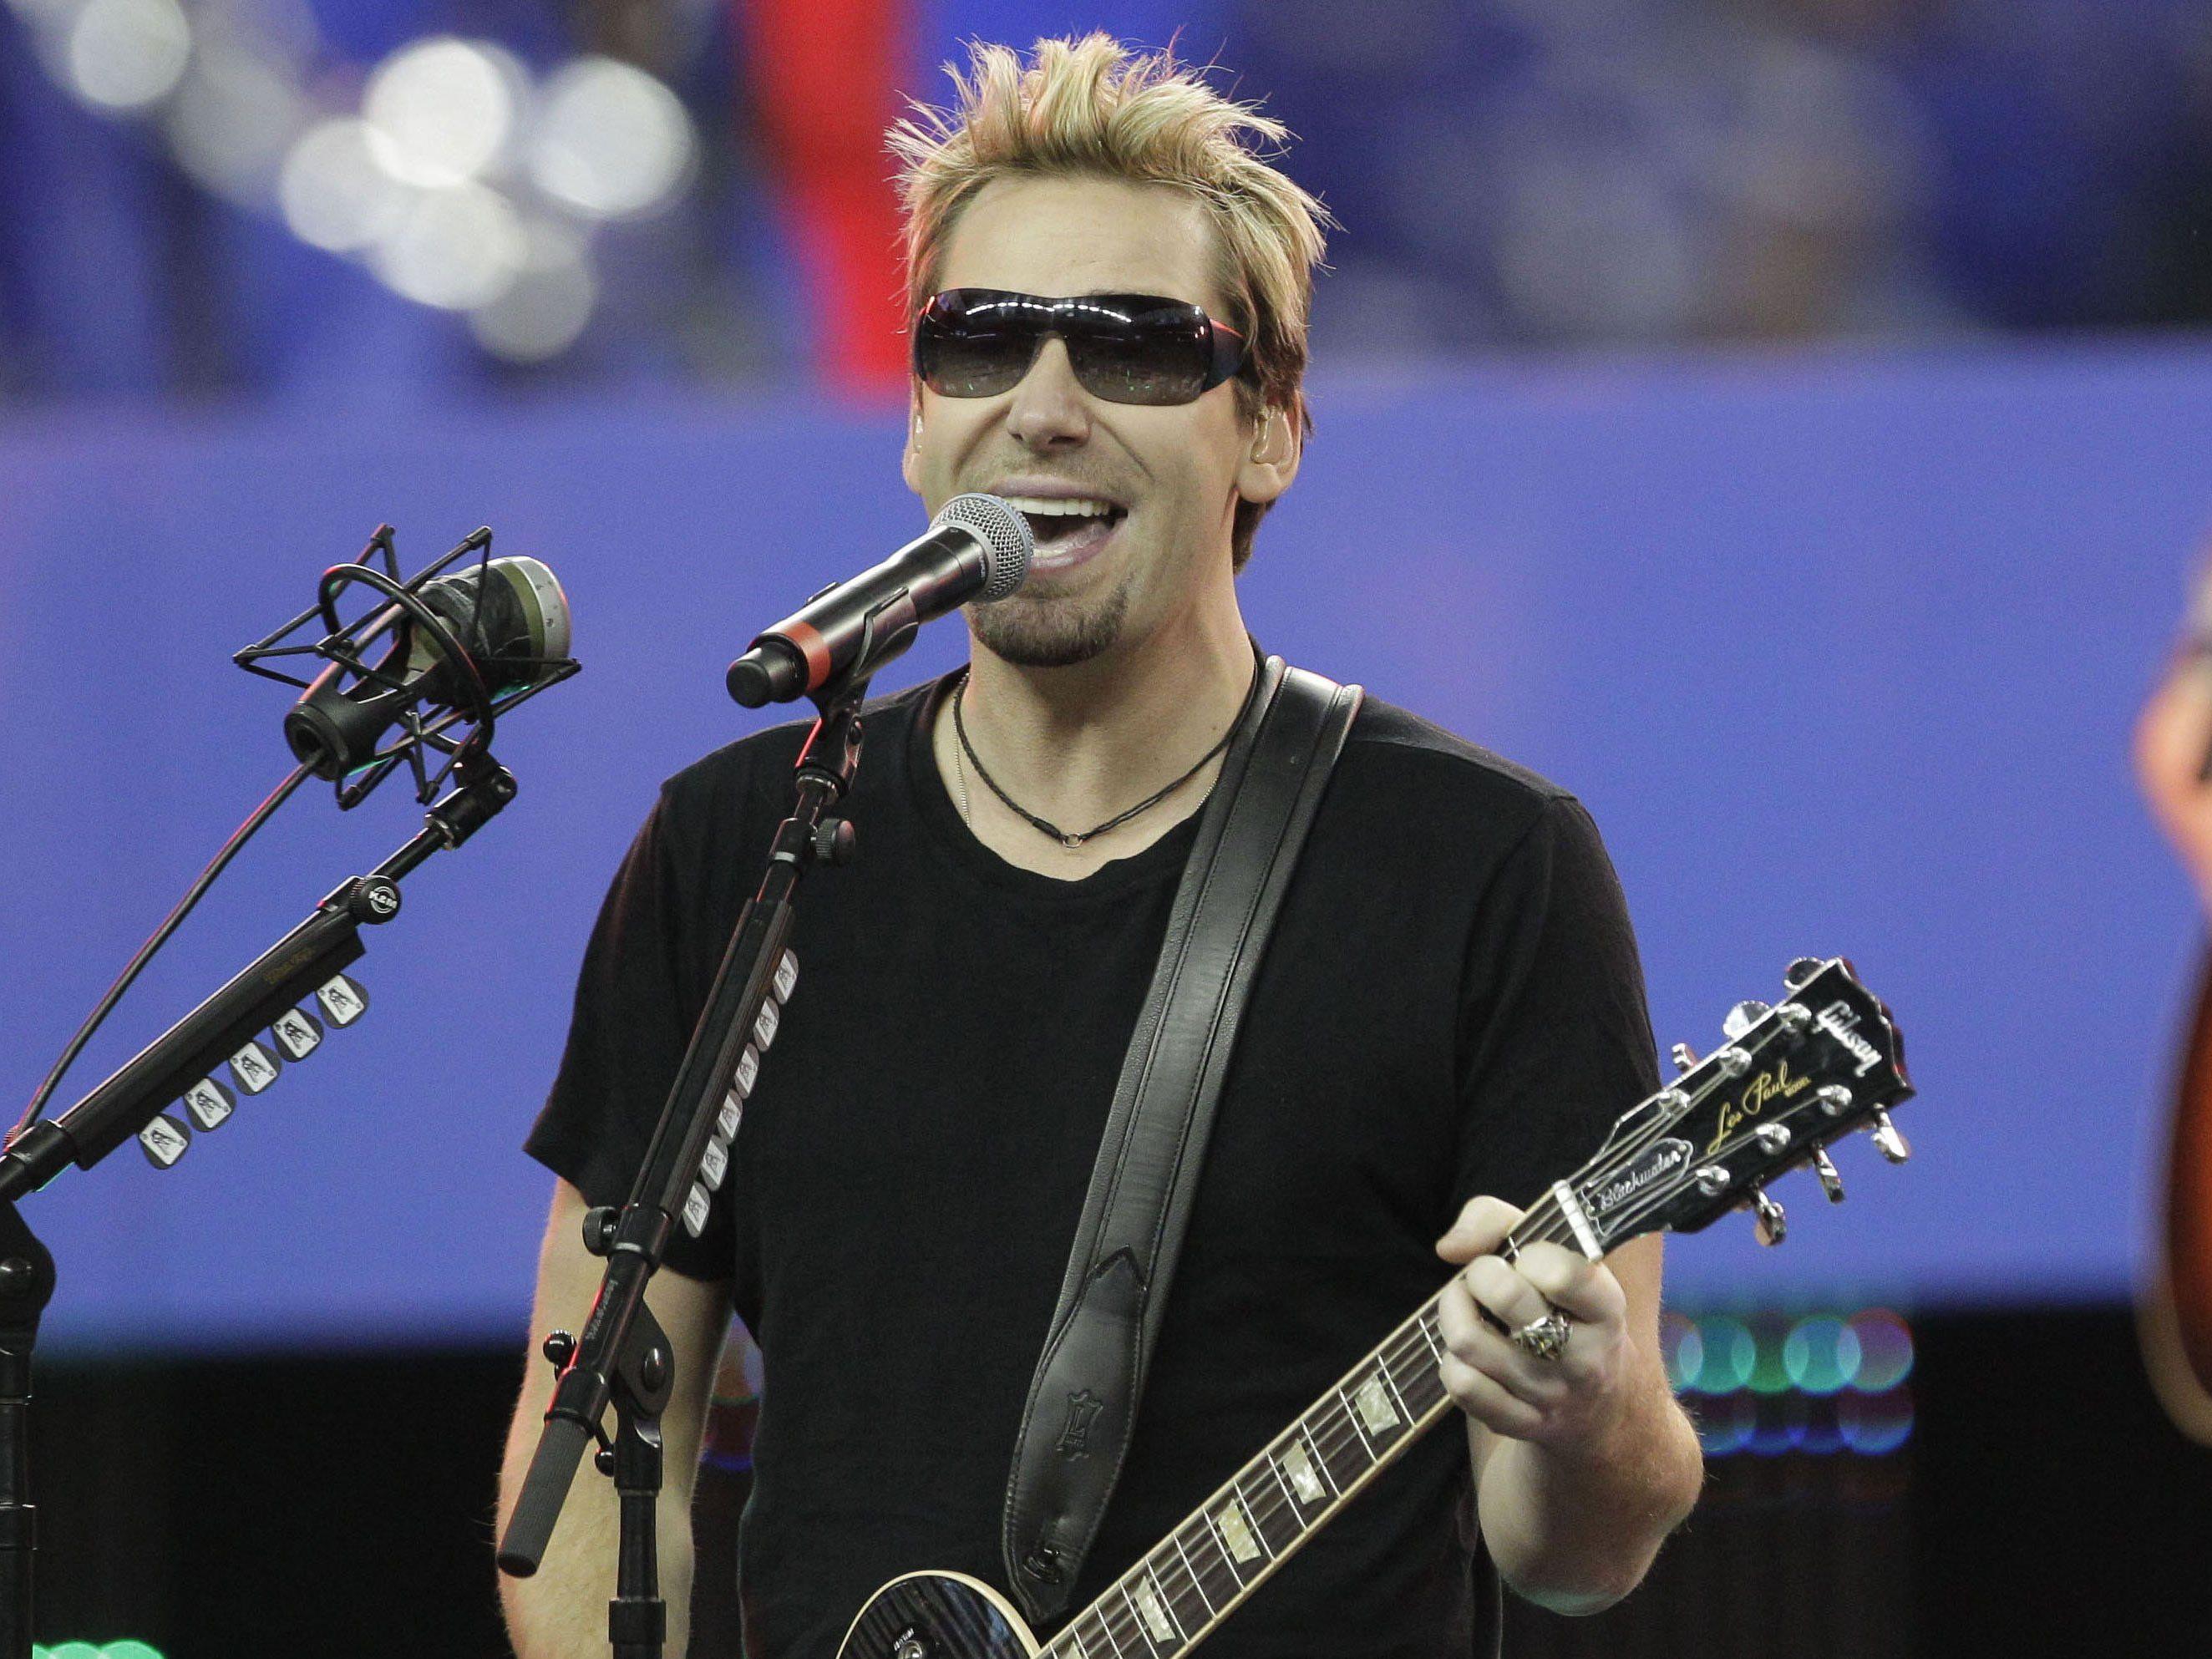 Der Nickelback-Sänger hat eine lange Pause für seine Stimme verschrieben bekommen.